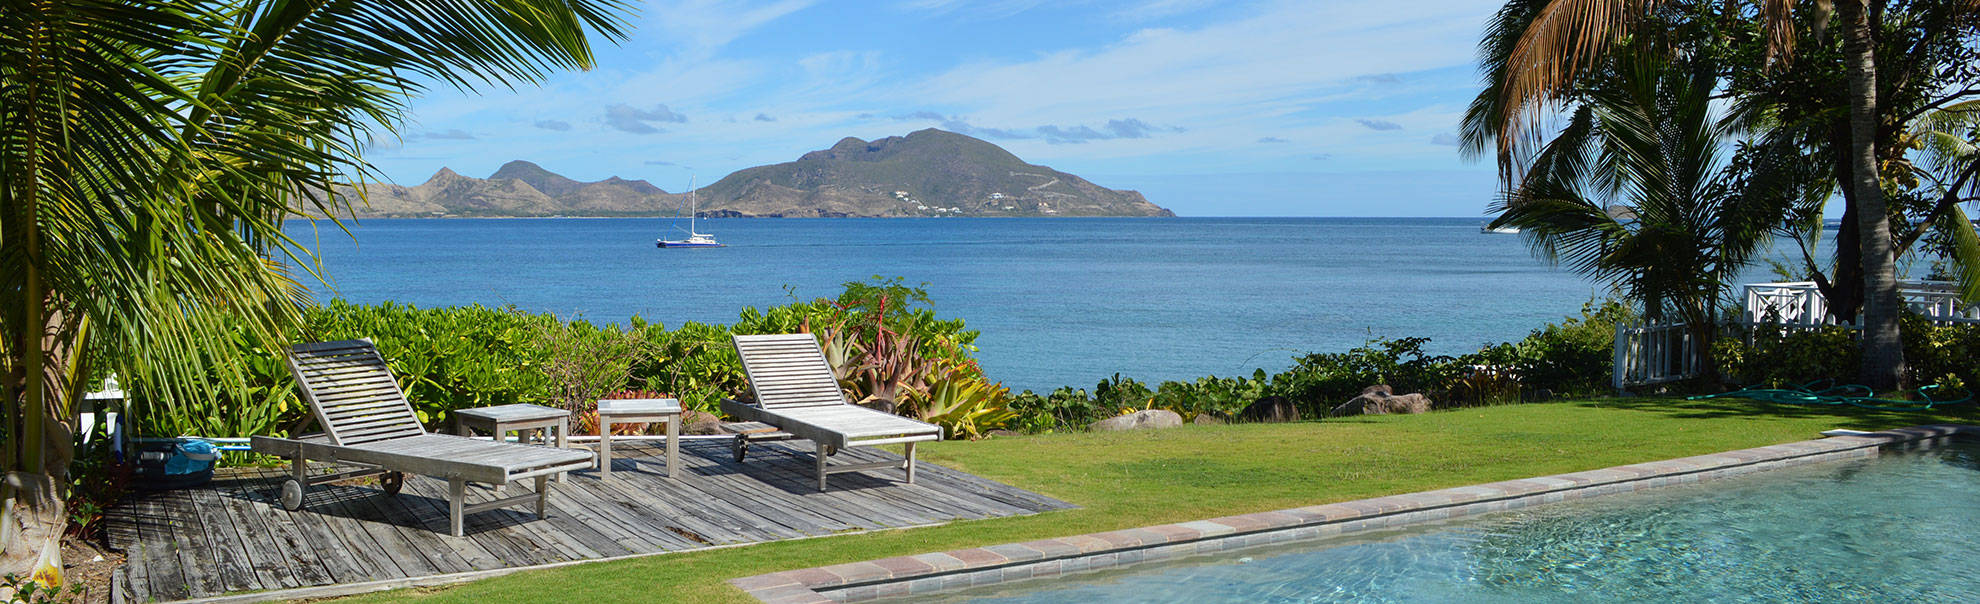 St Kitts And Nevis Pool Resort Wallpaper